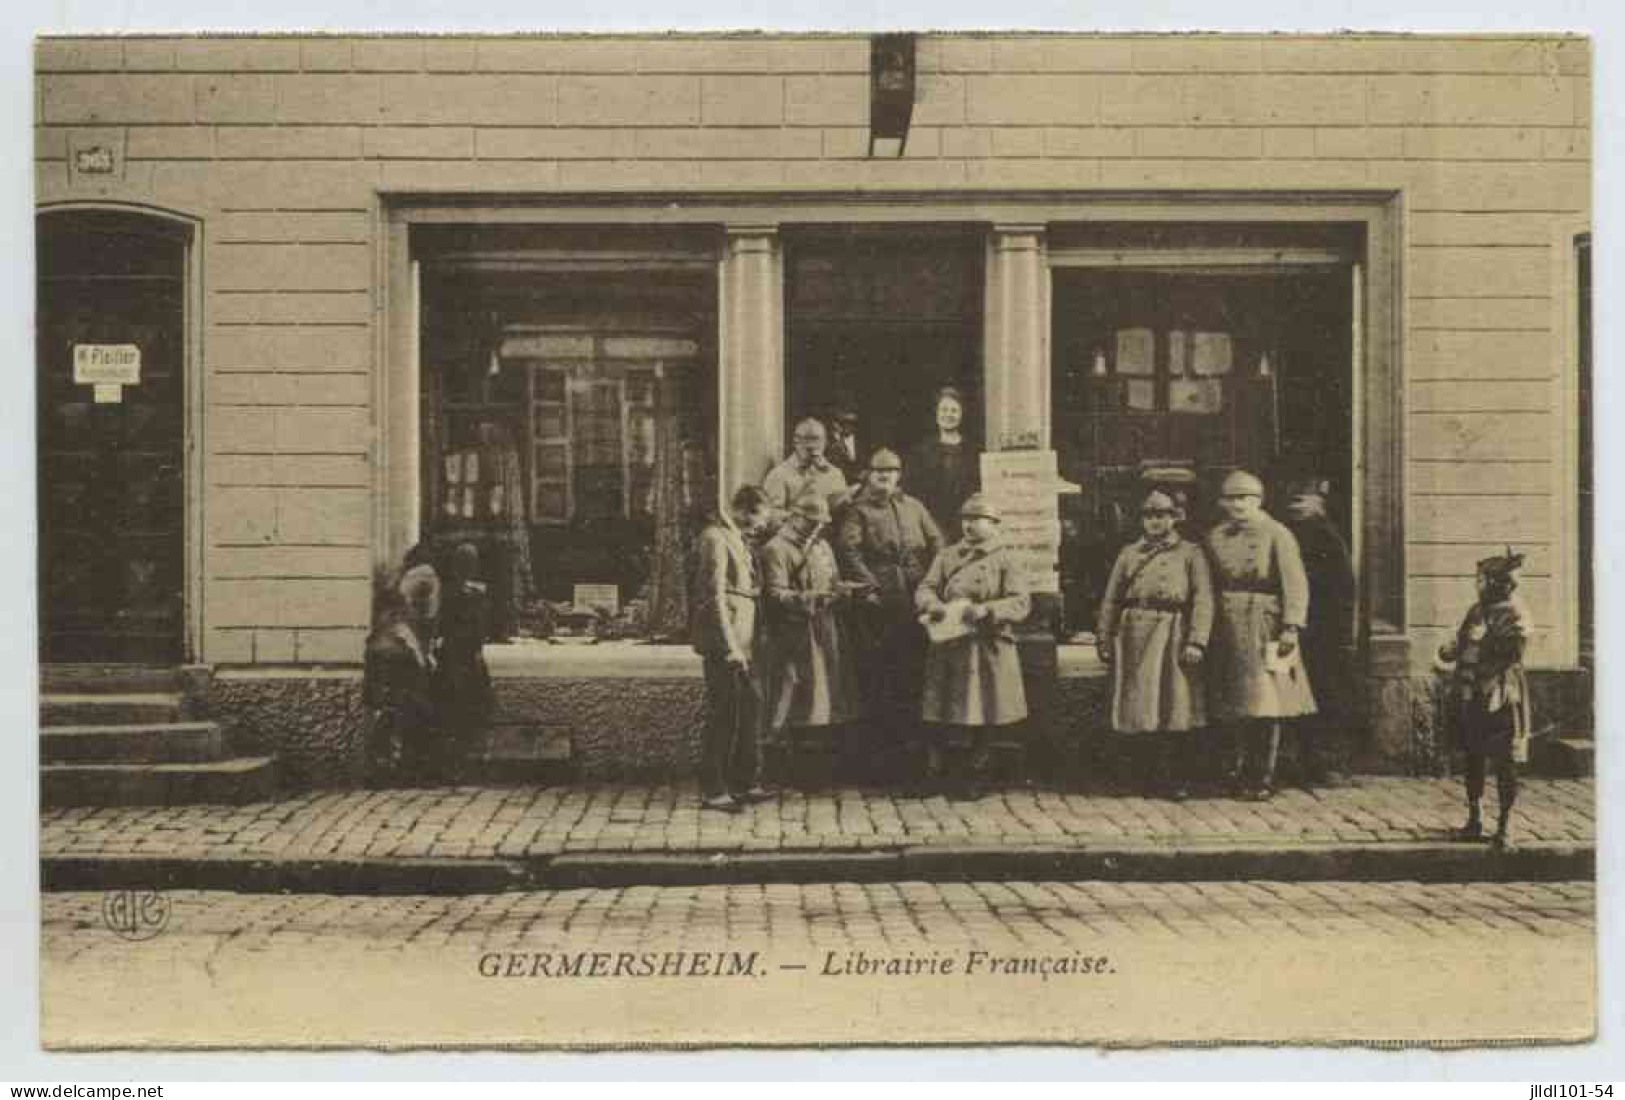 Germersheim, Librairie Française (lt7) - Germersheim